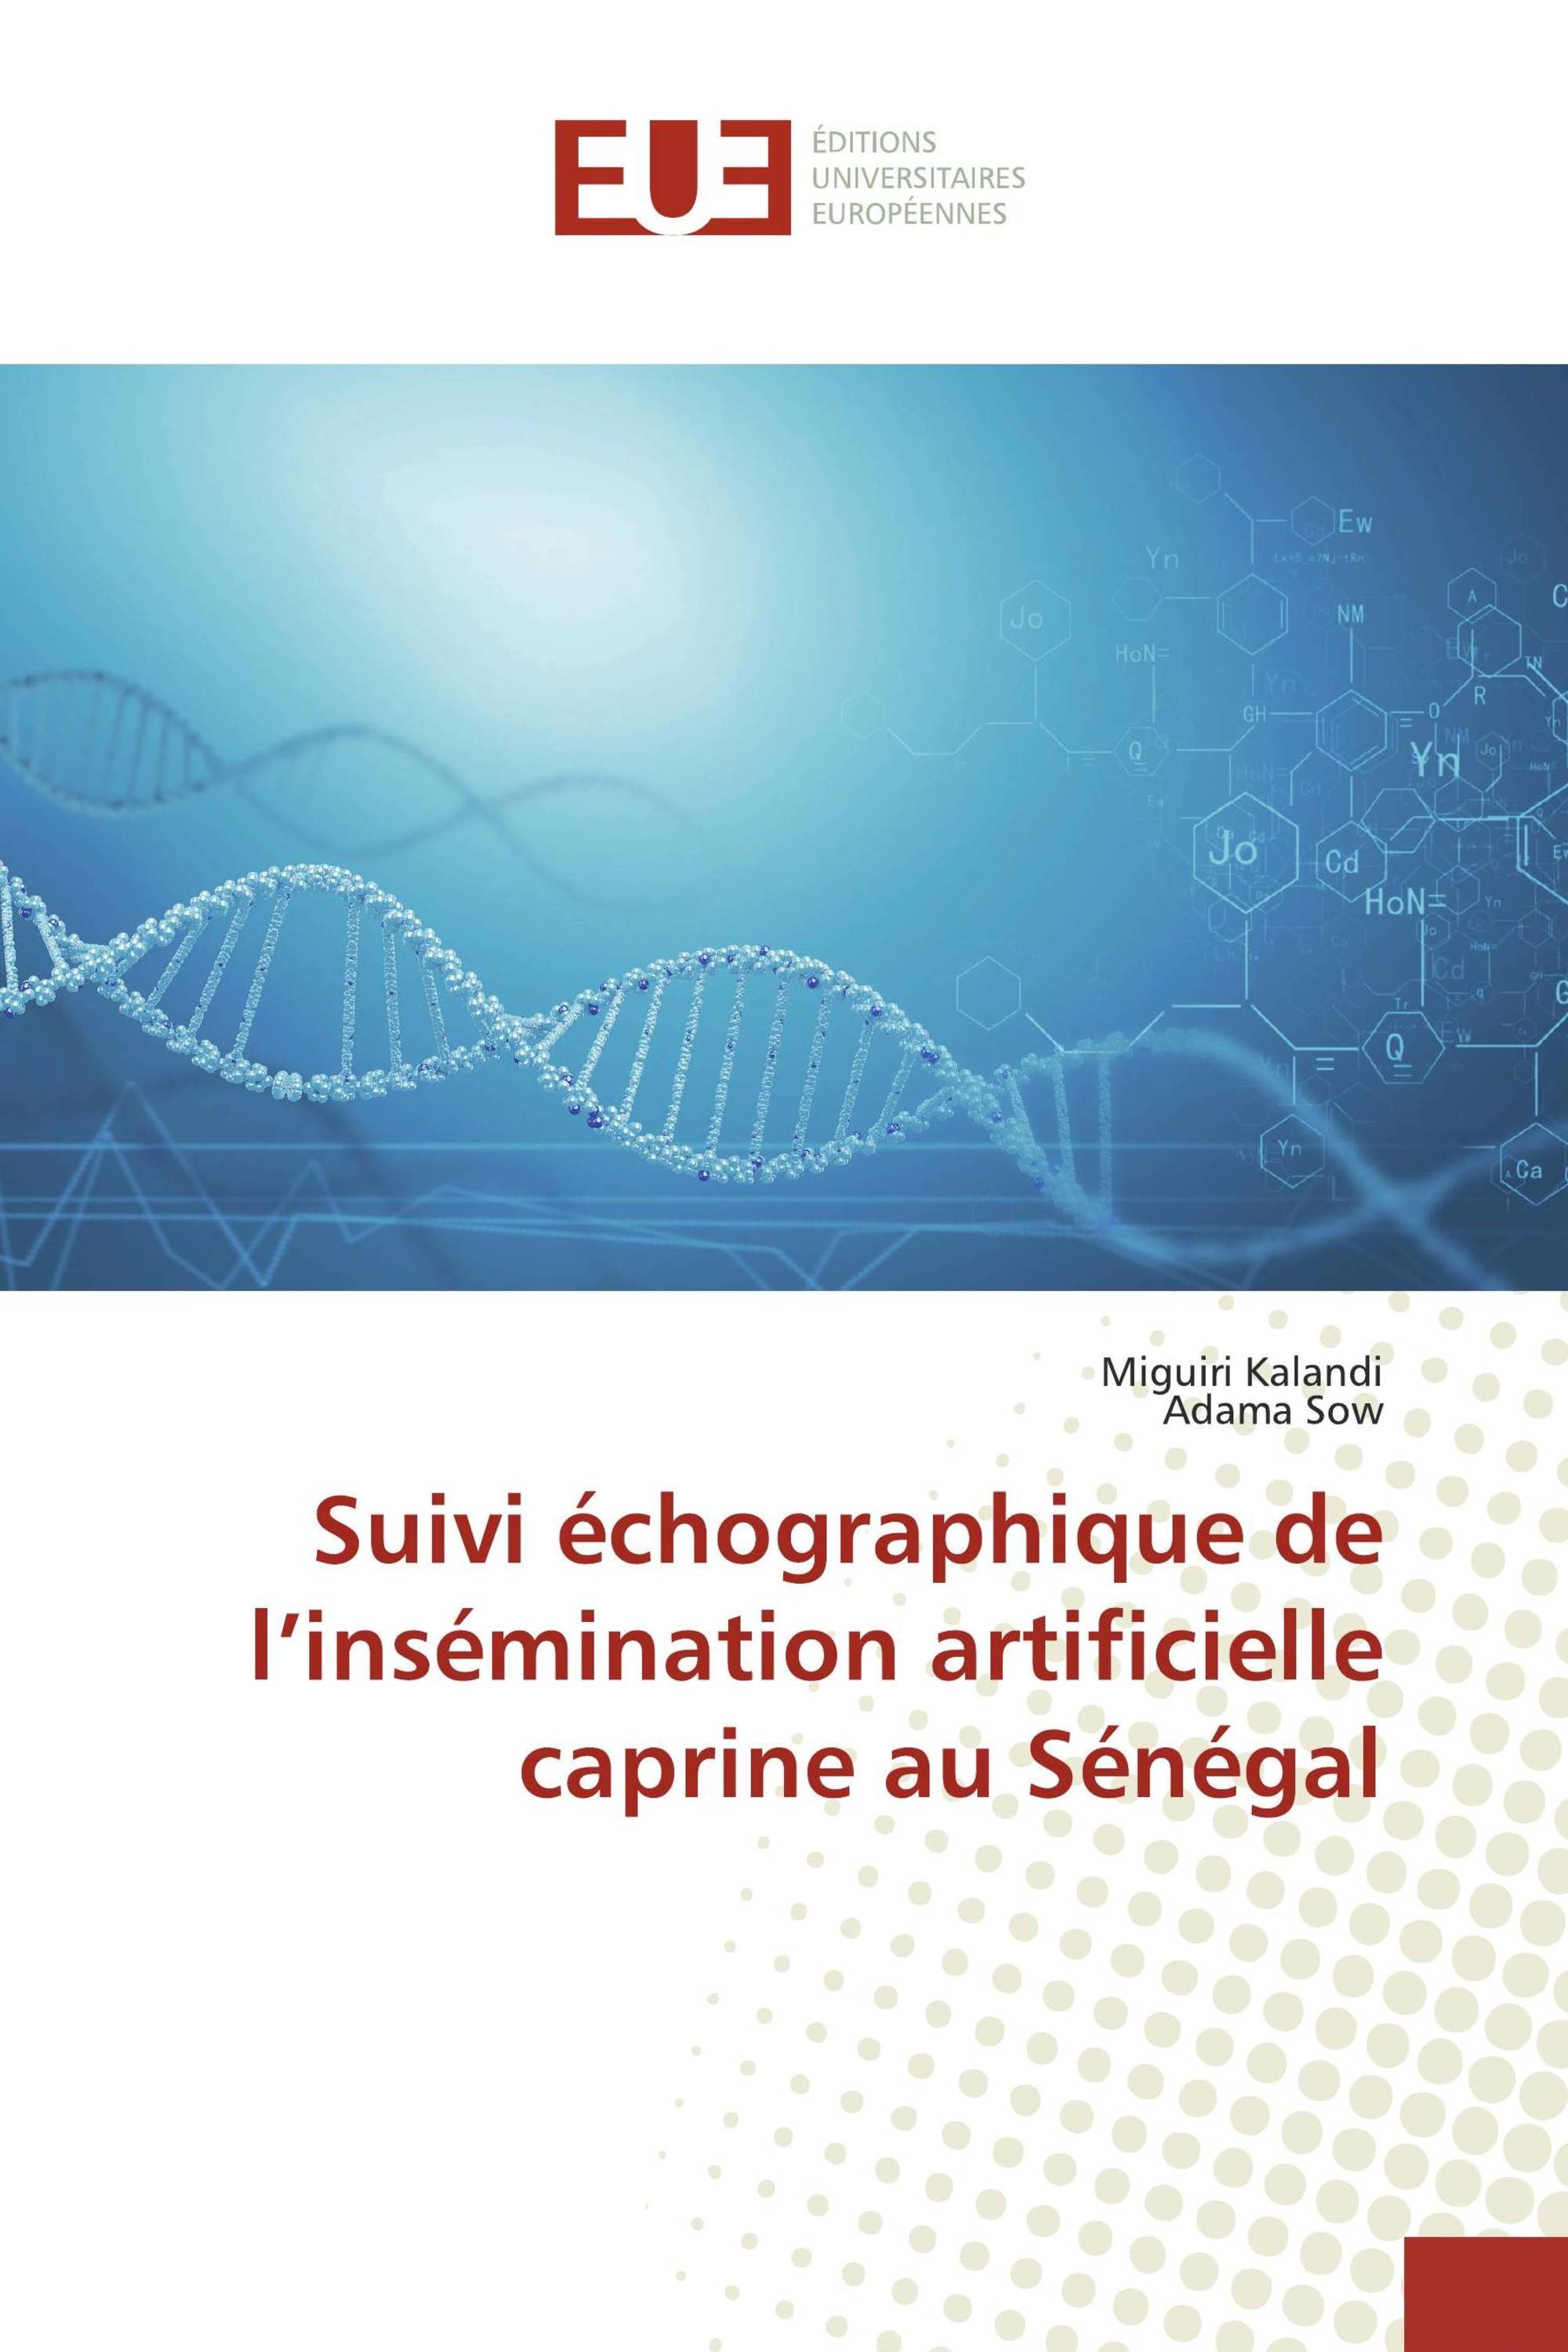 Suivi échographique de l’insémination artificielle caprine au Sénégal